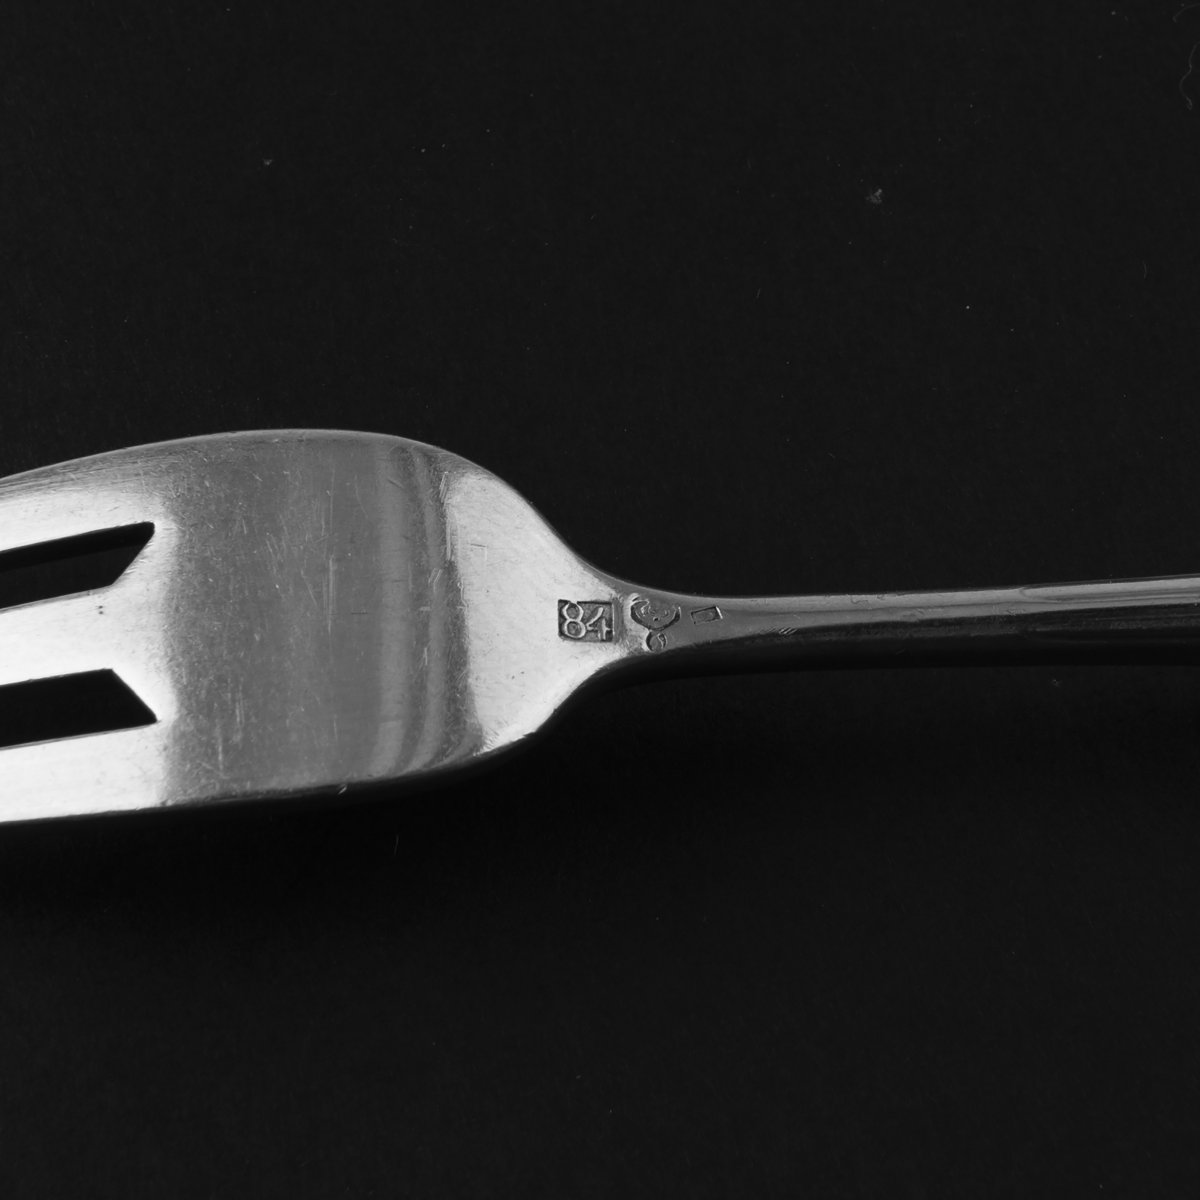 Henry van de Velde, Fruit fork and knife 'Model I', 1905/06Fruit fork and knife 'Model I', 1905/06L. - Image 2 of 3